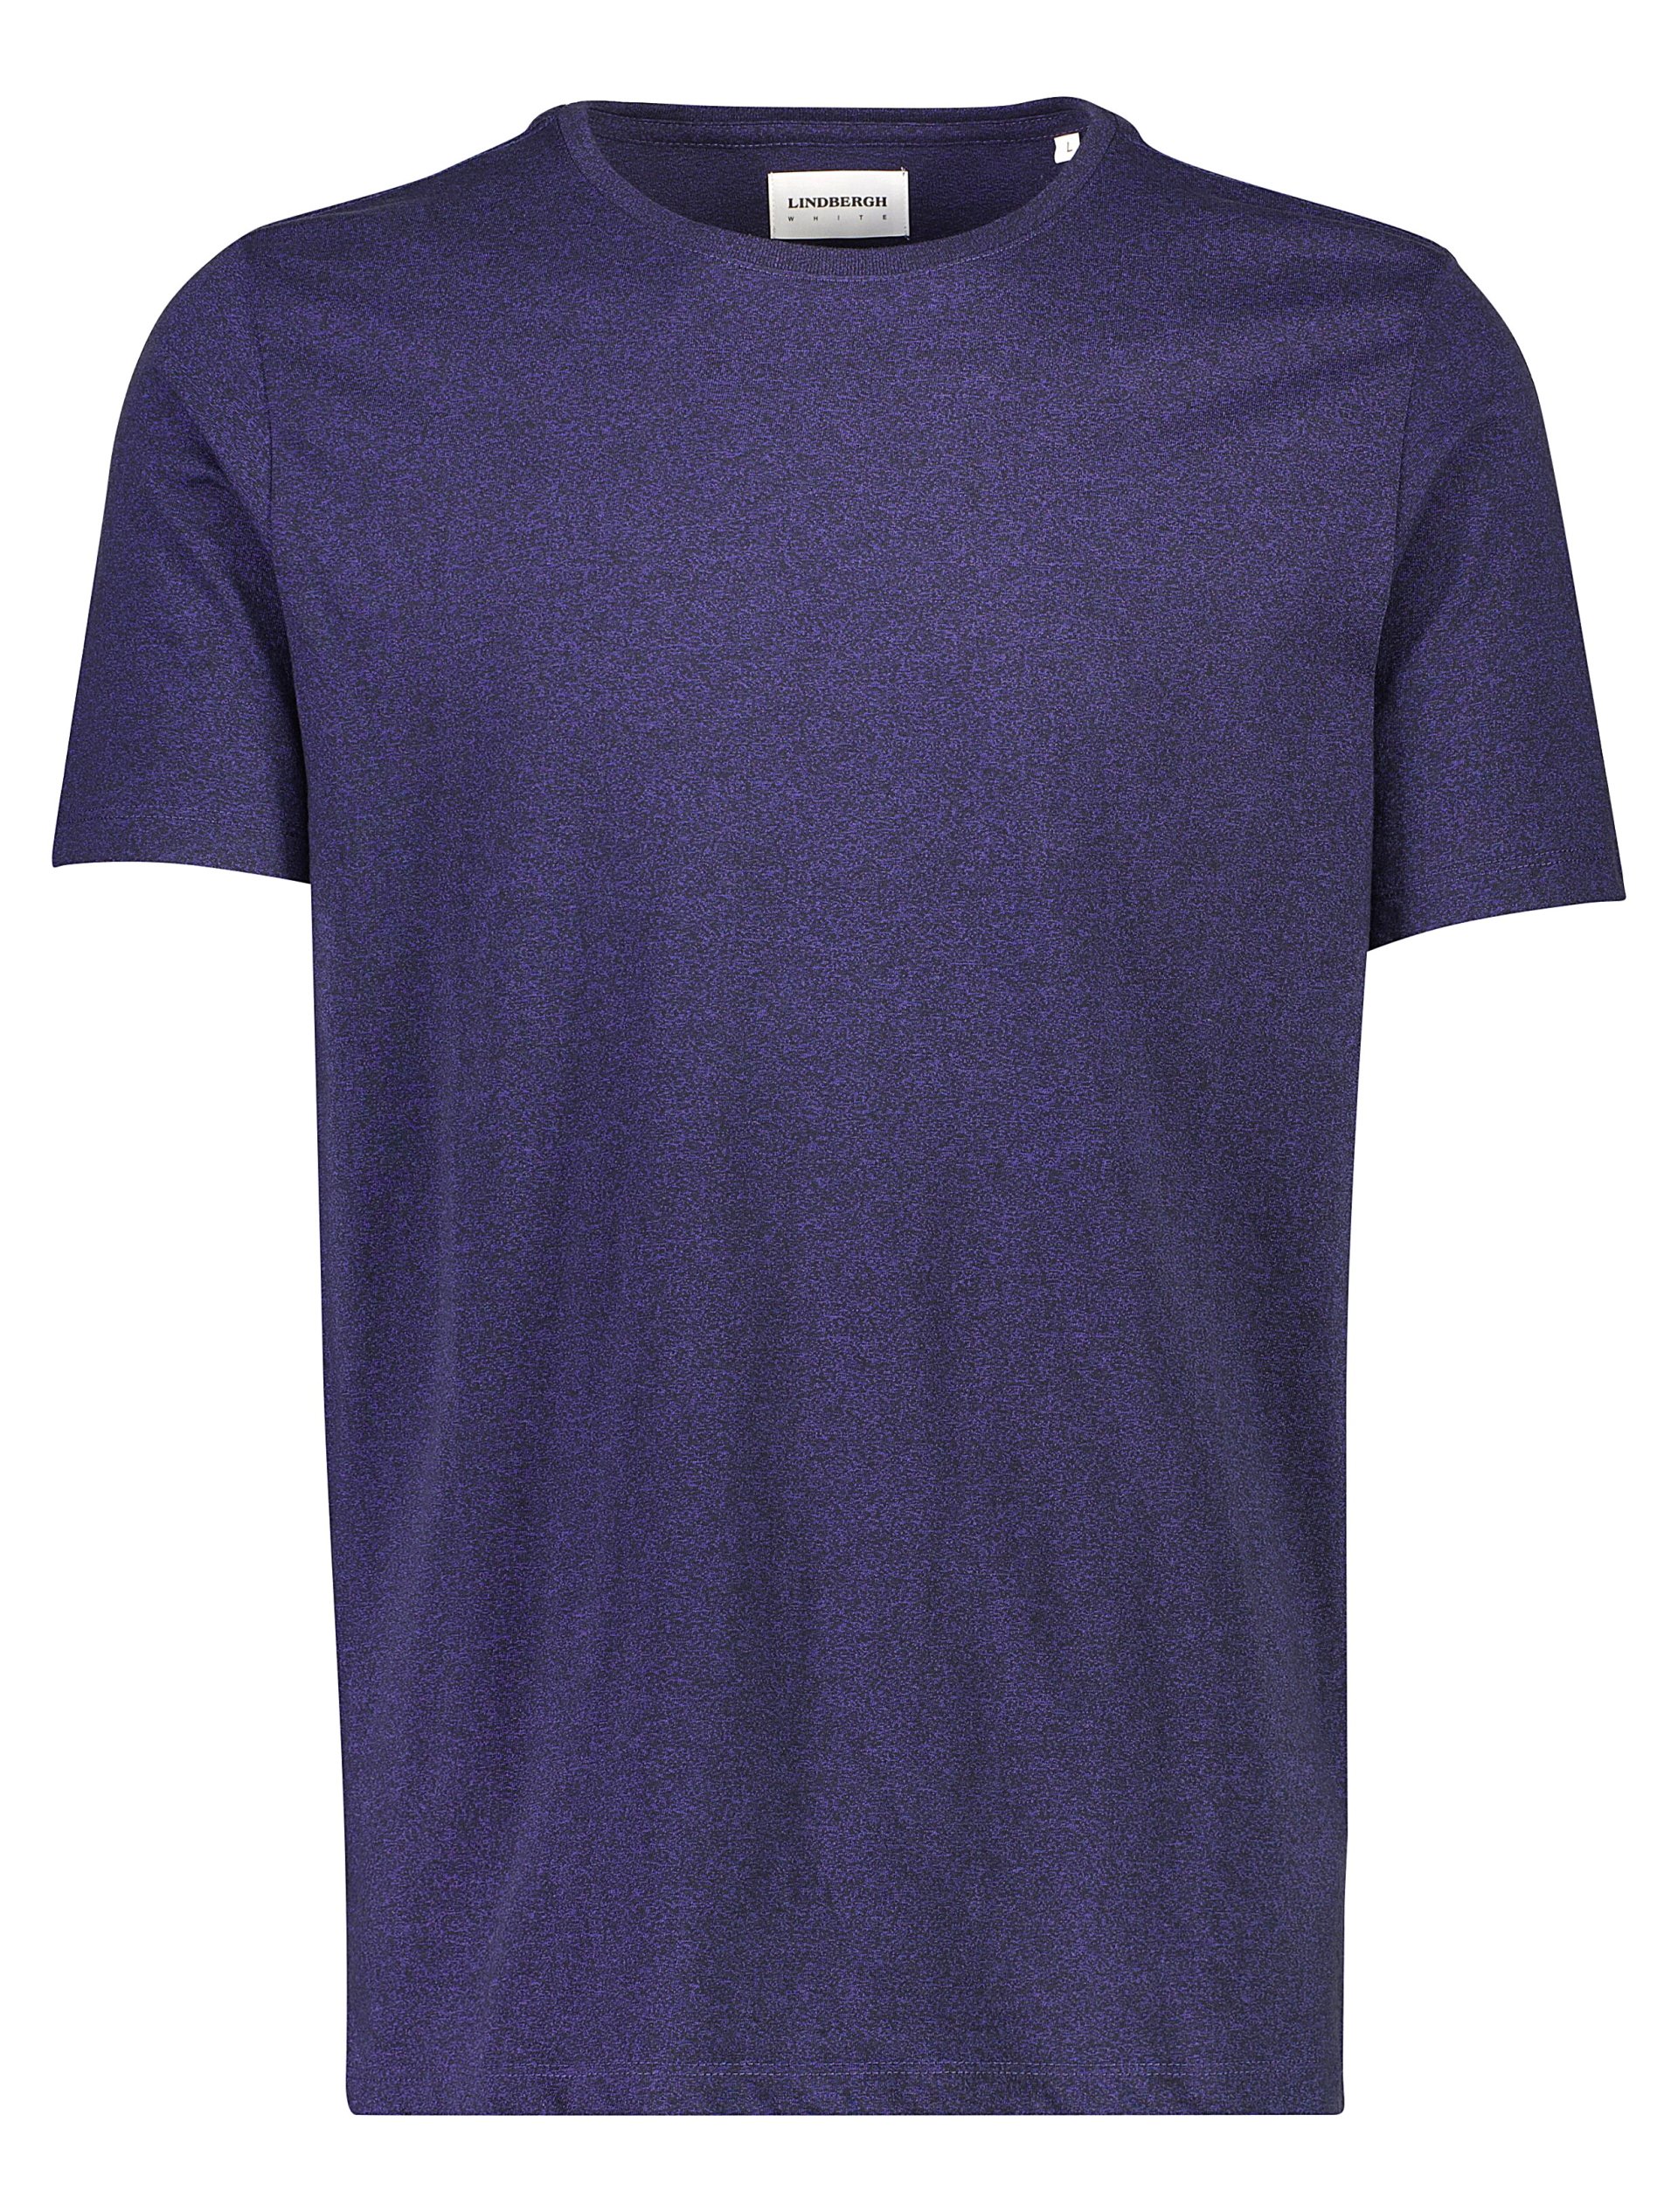 Lindbergh T-shirt lilla / dark purple